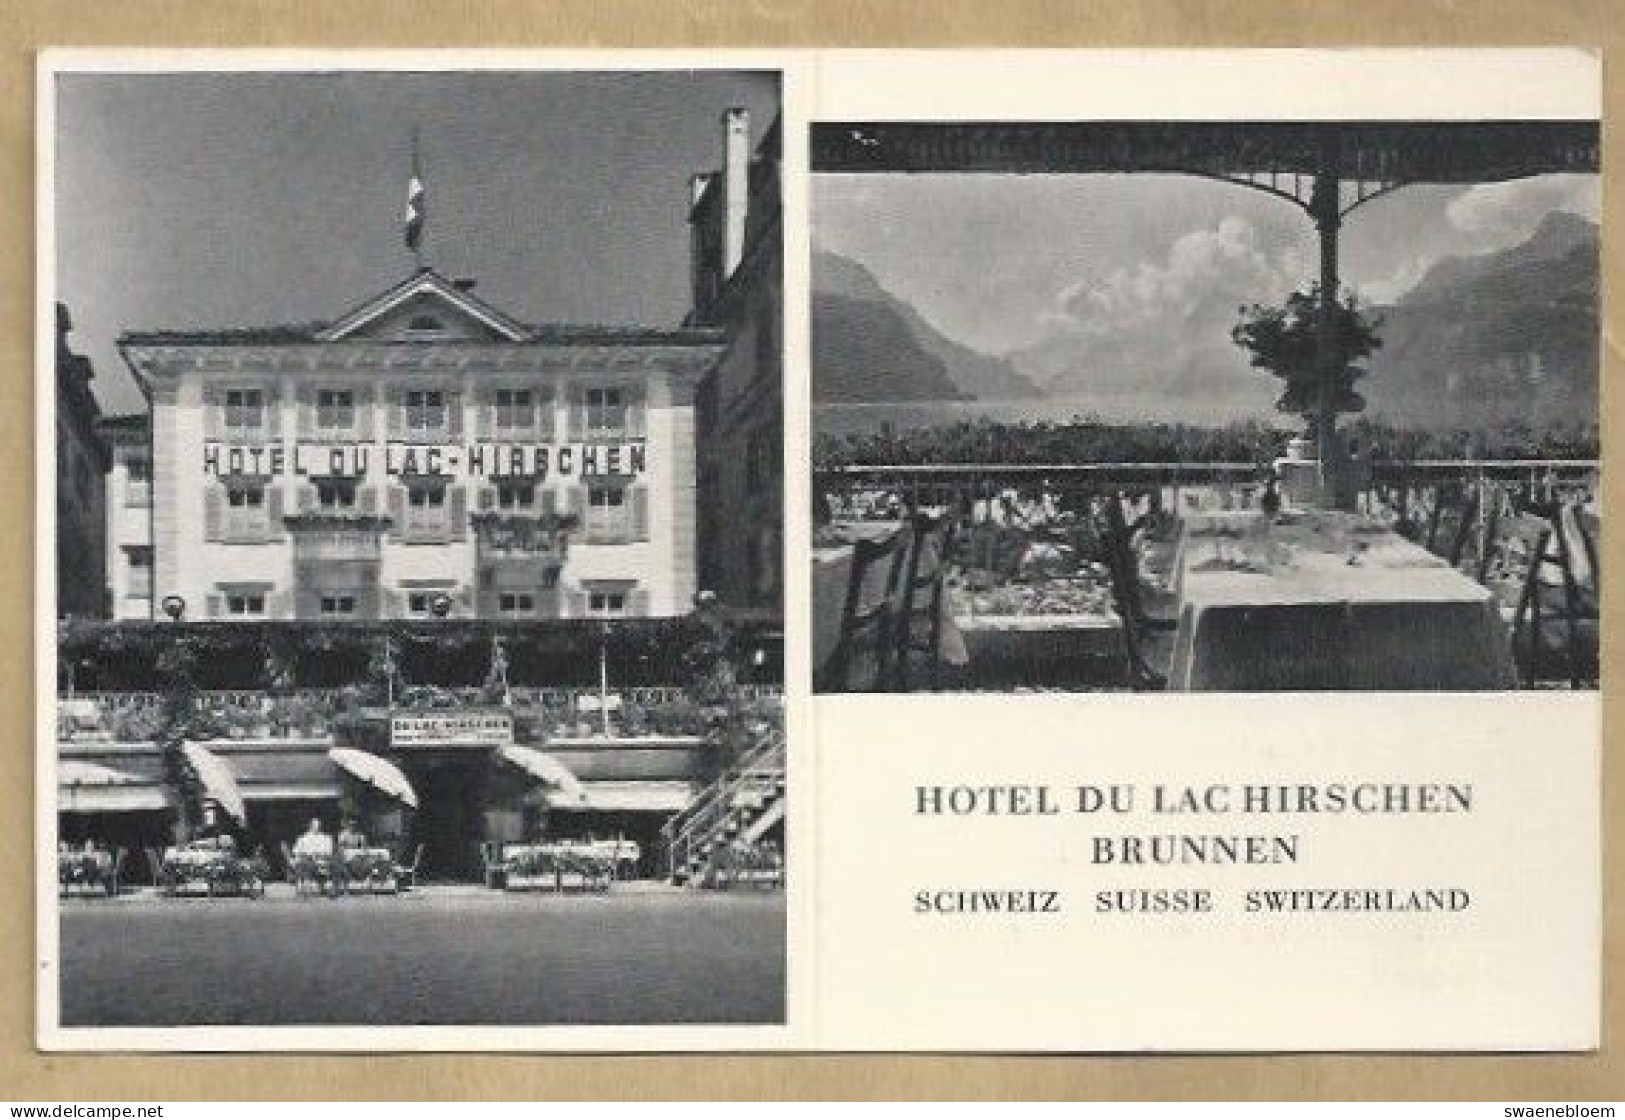 CH.- SCHWEIZ. SUISSE. SWITZERLAND. HOTEL DU LAC HIRSCHEN BRUNNEN. - Hotels & Gaststätten